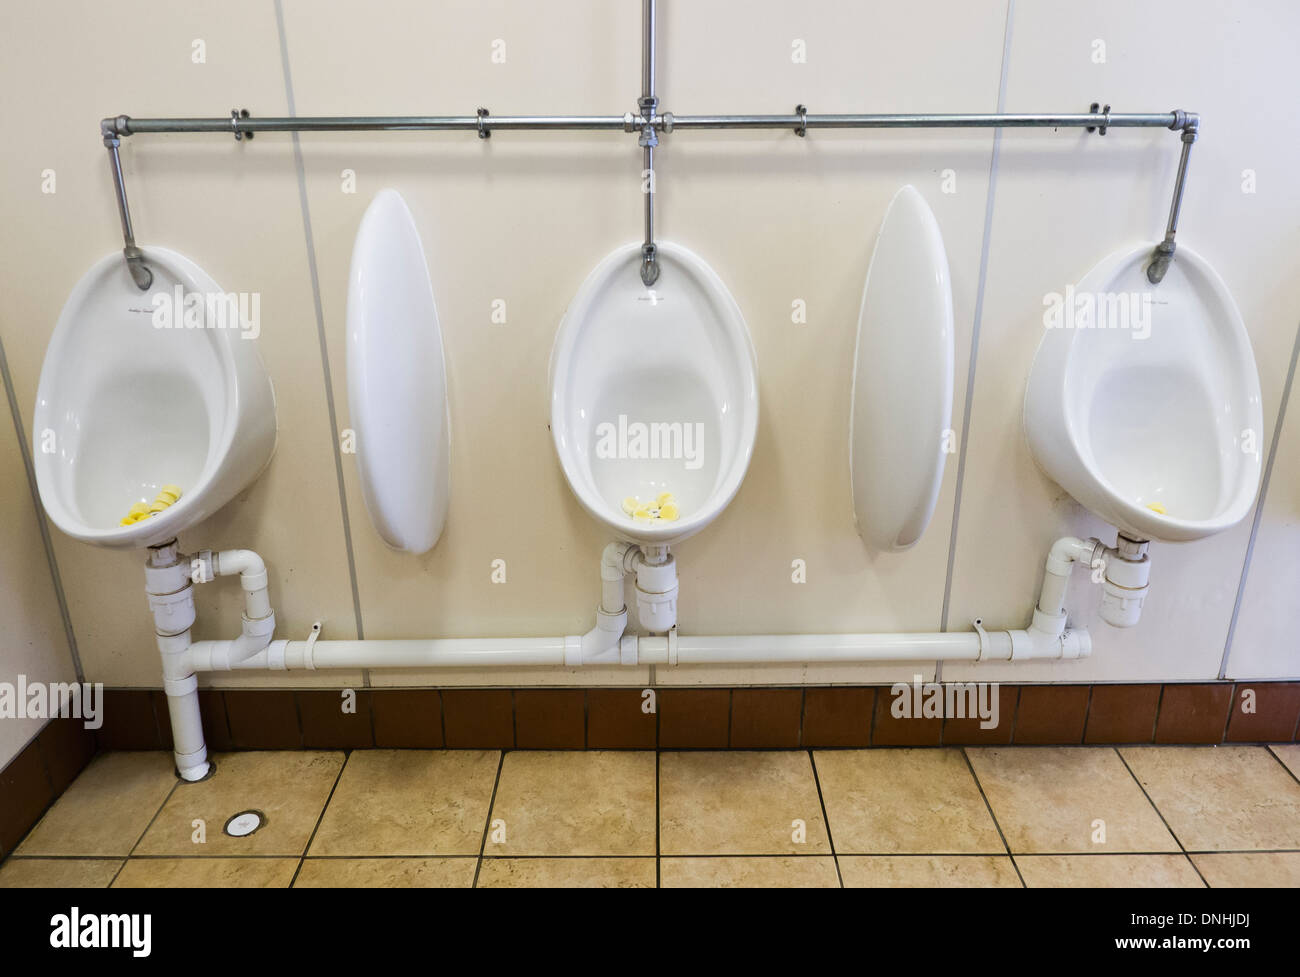 D'urinoirs dans un monsieurs toilettes publiques. Banque D'Images